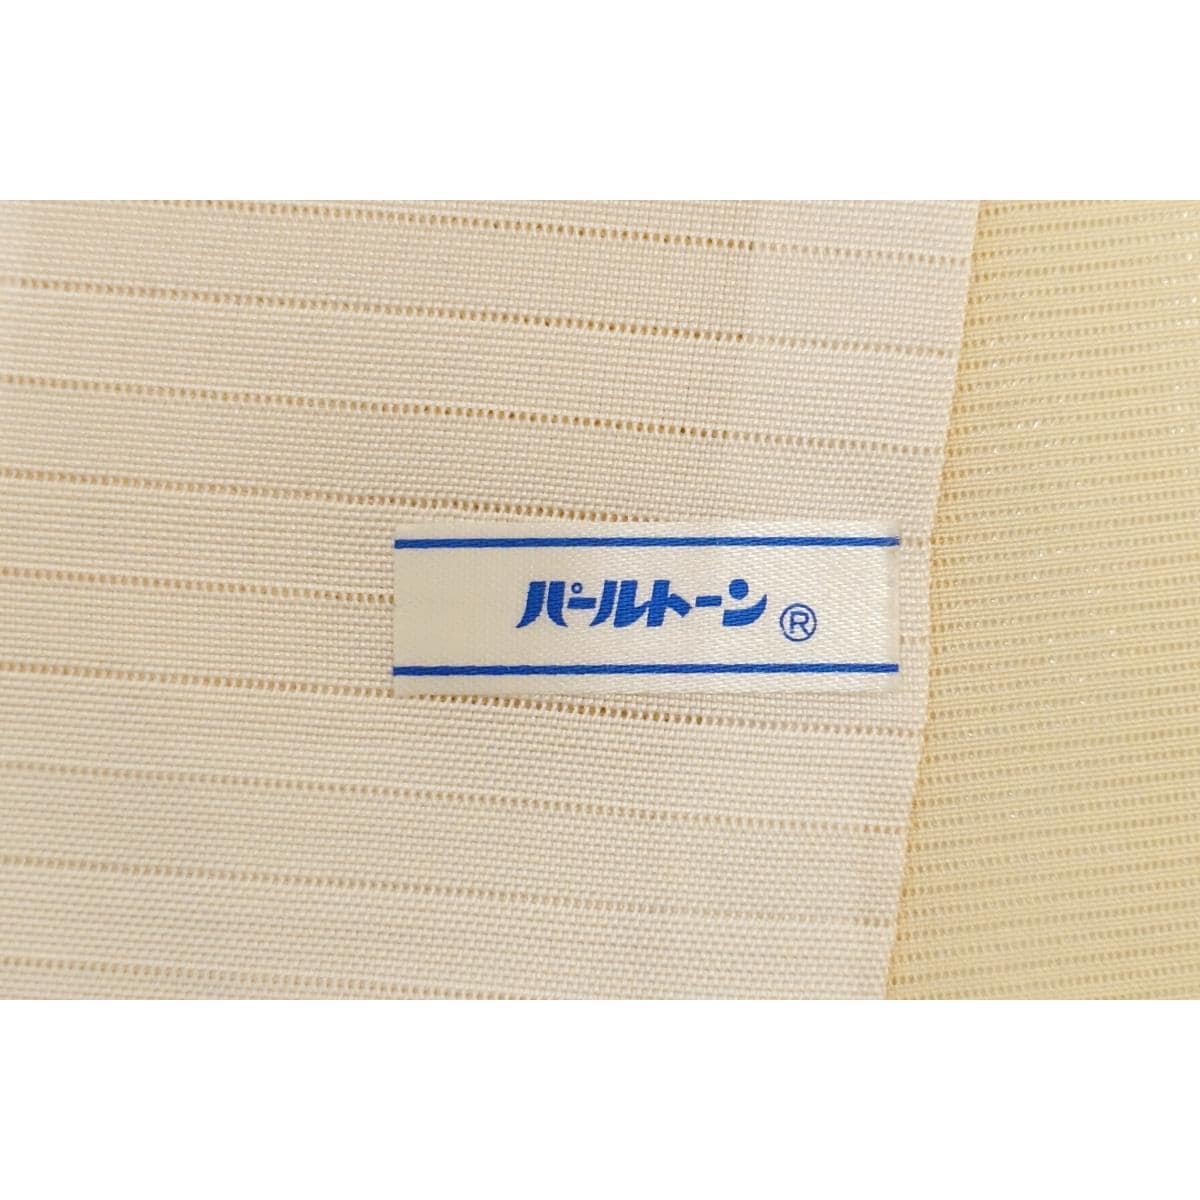 [Unused items] Single robe, Komagari visiting wear